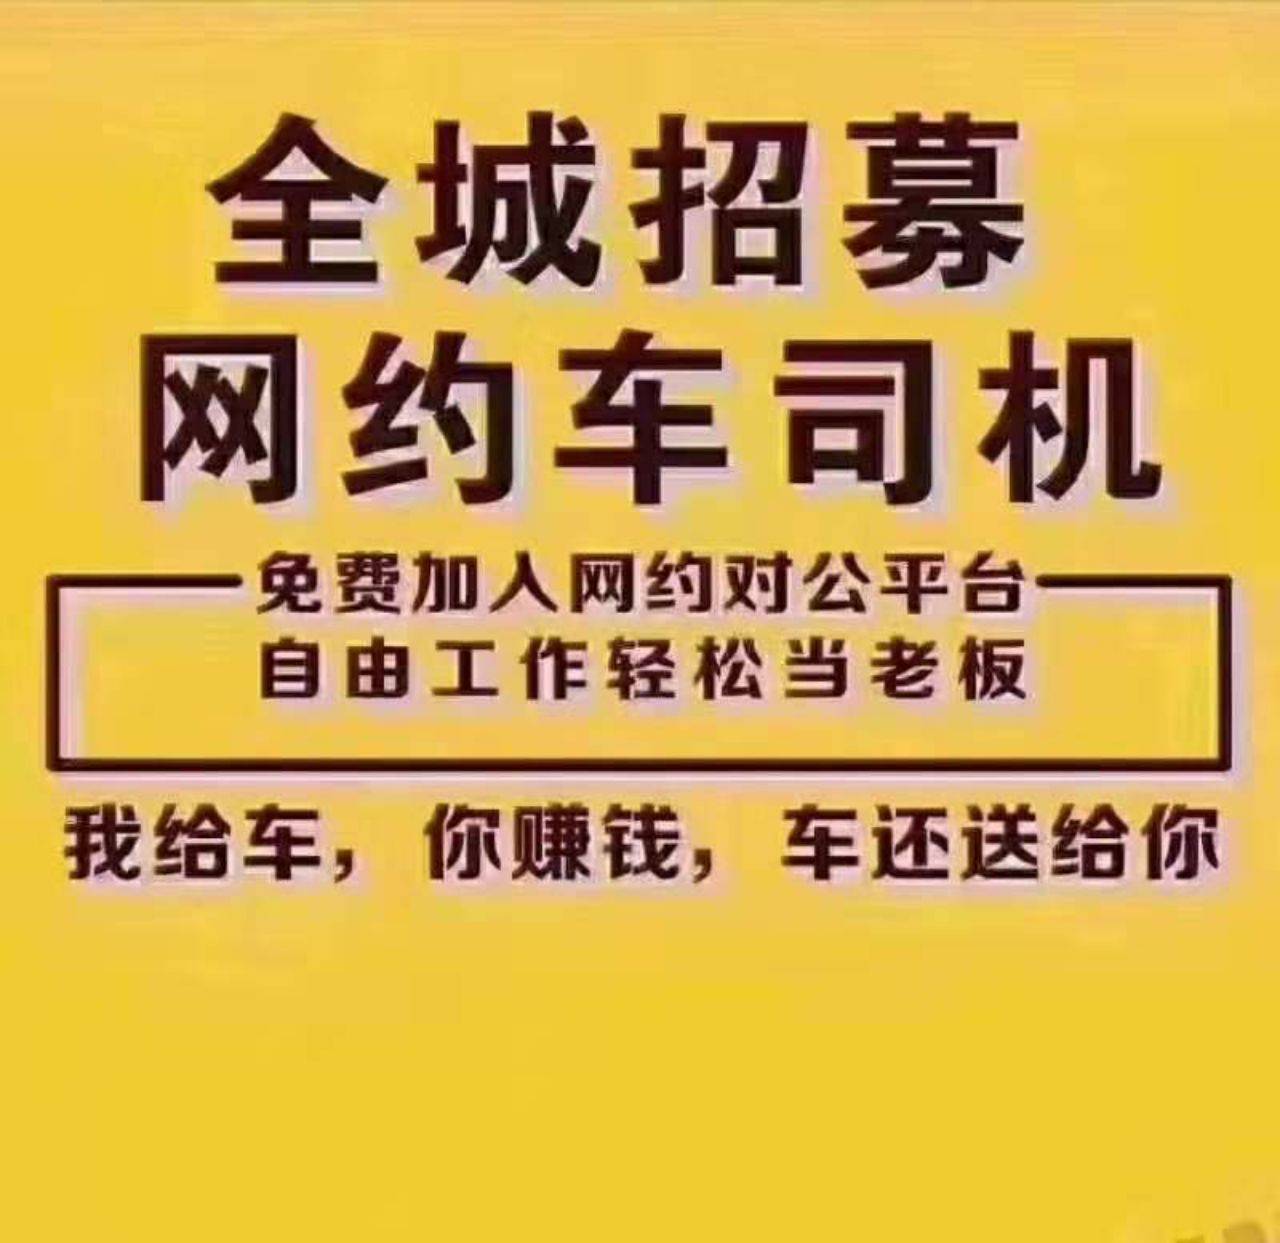 武汉北通恒智科技有限公司在仙桃招聘滴滴司机,网约车司机